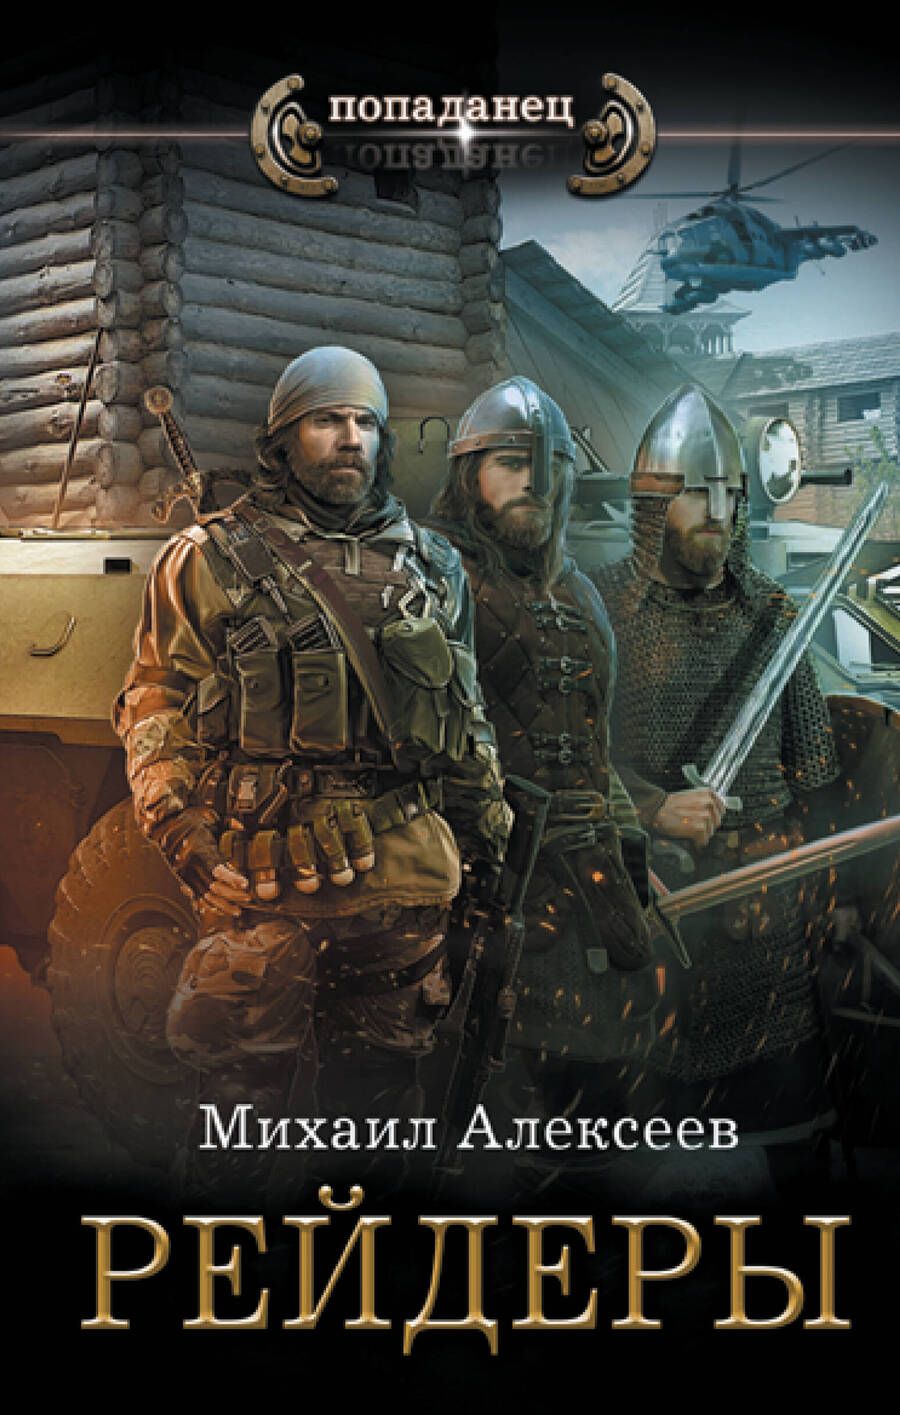 Обложка книги "Алексеев: Рейдеры"